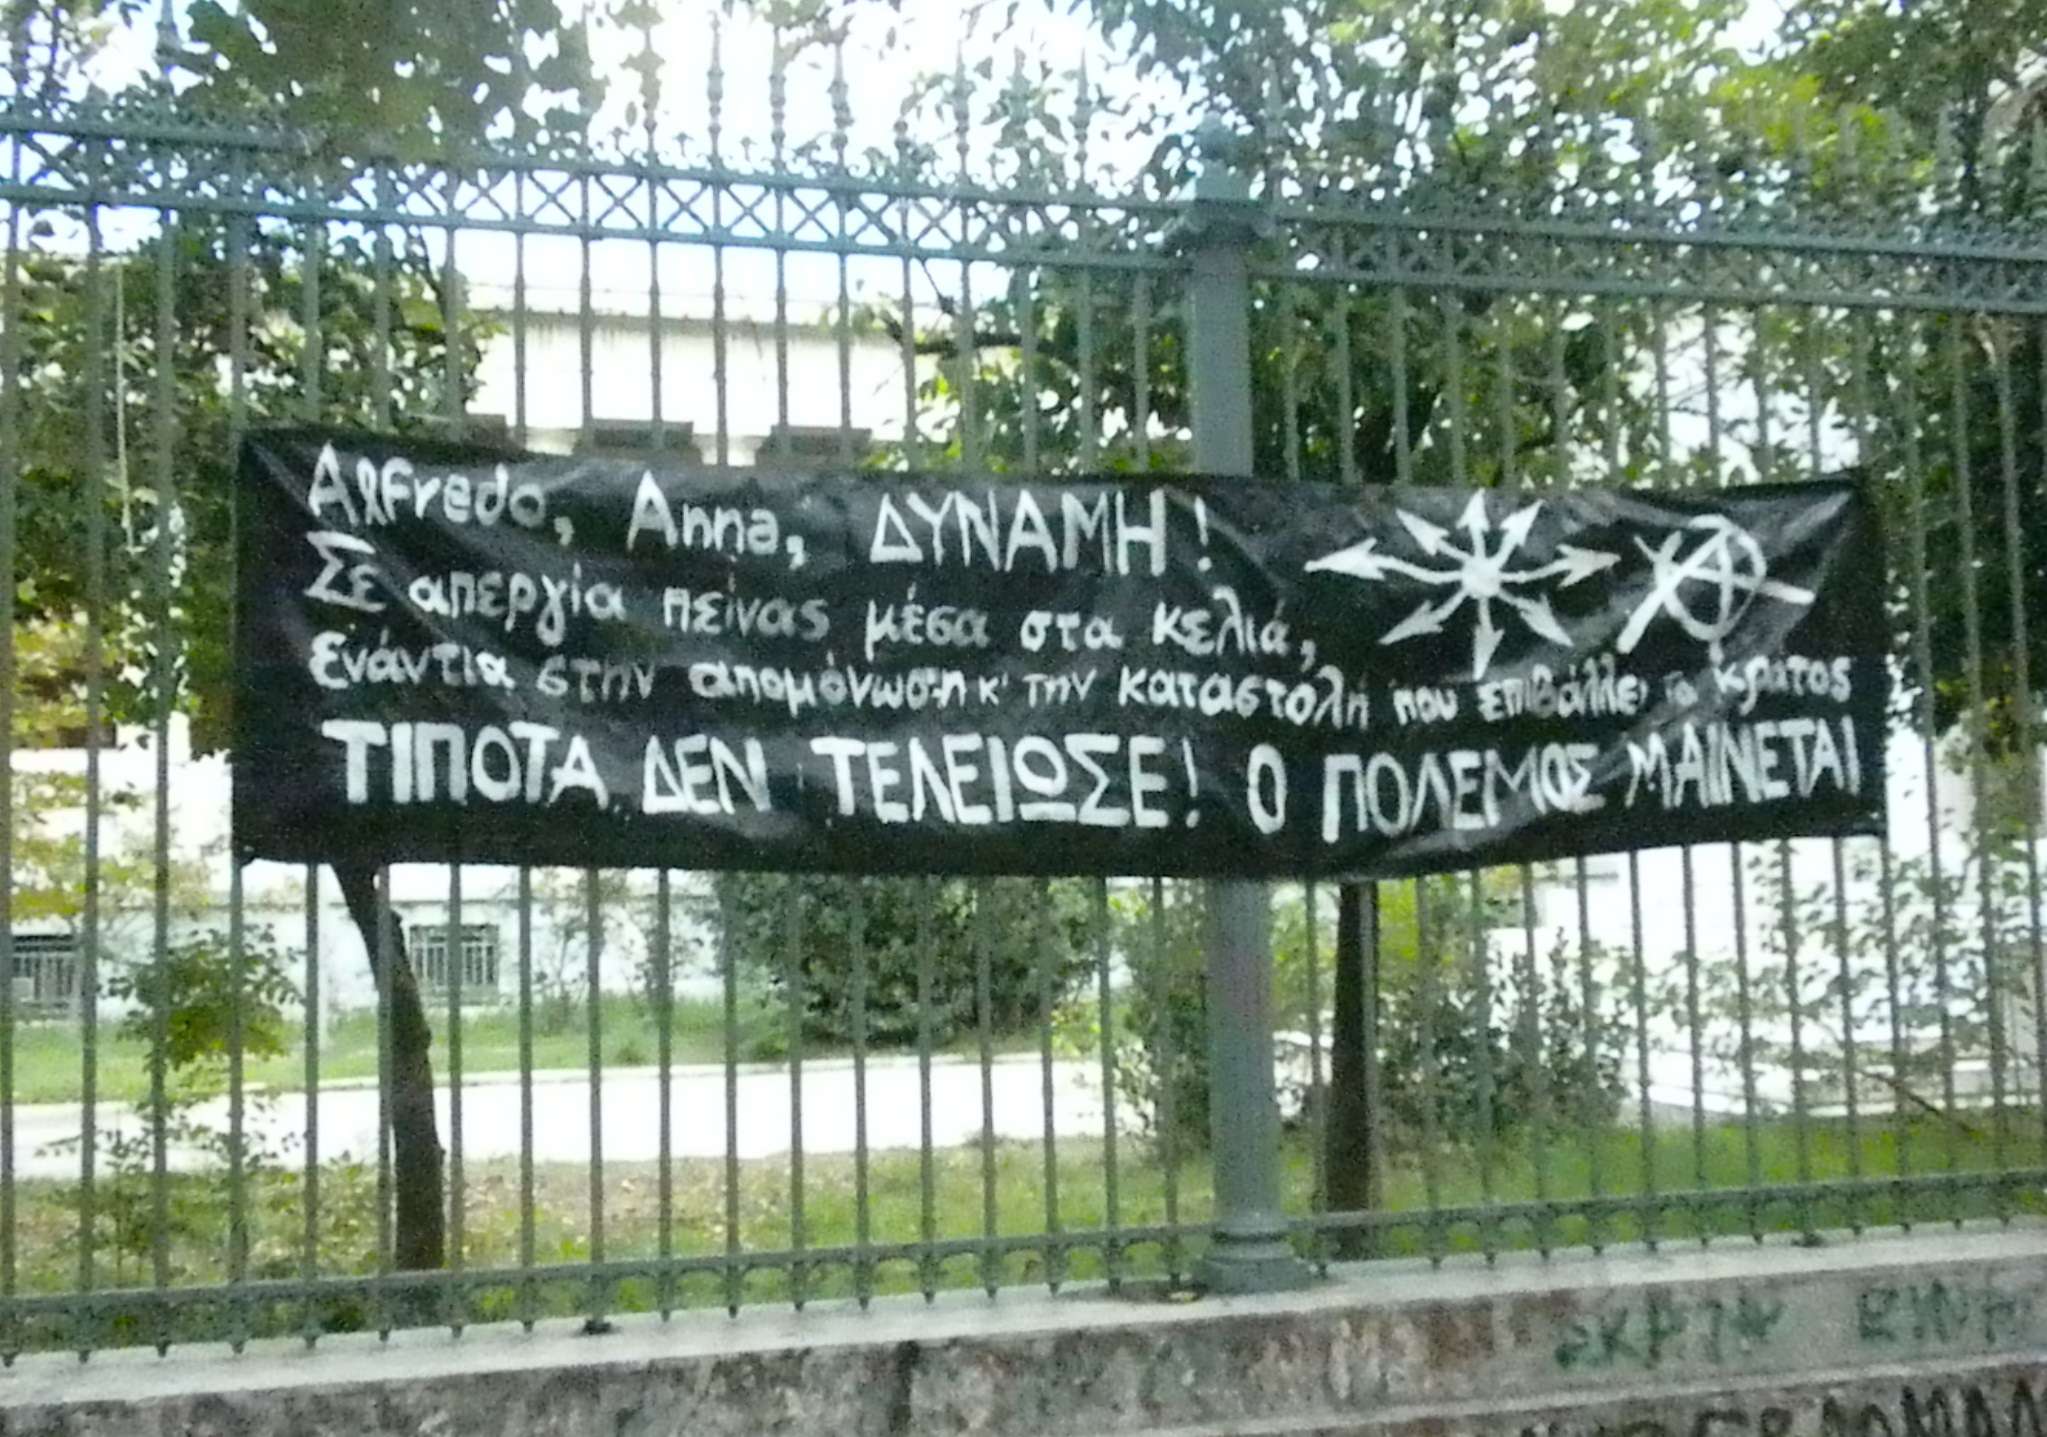 Uroborus, Greece: About the hunger strike of Alfredo Cospito and Anna Beniamino in the italian prisons